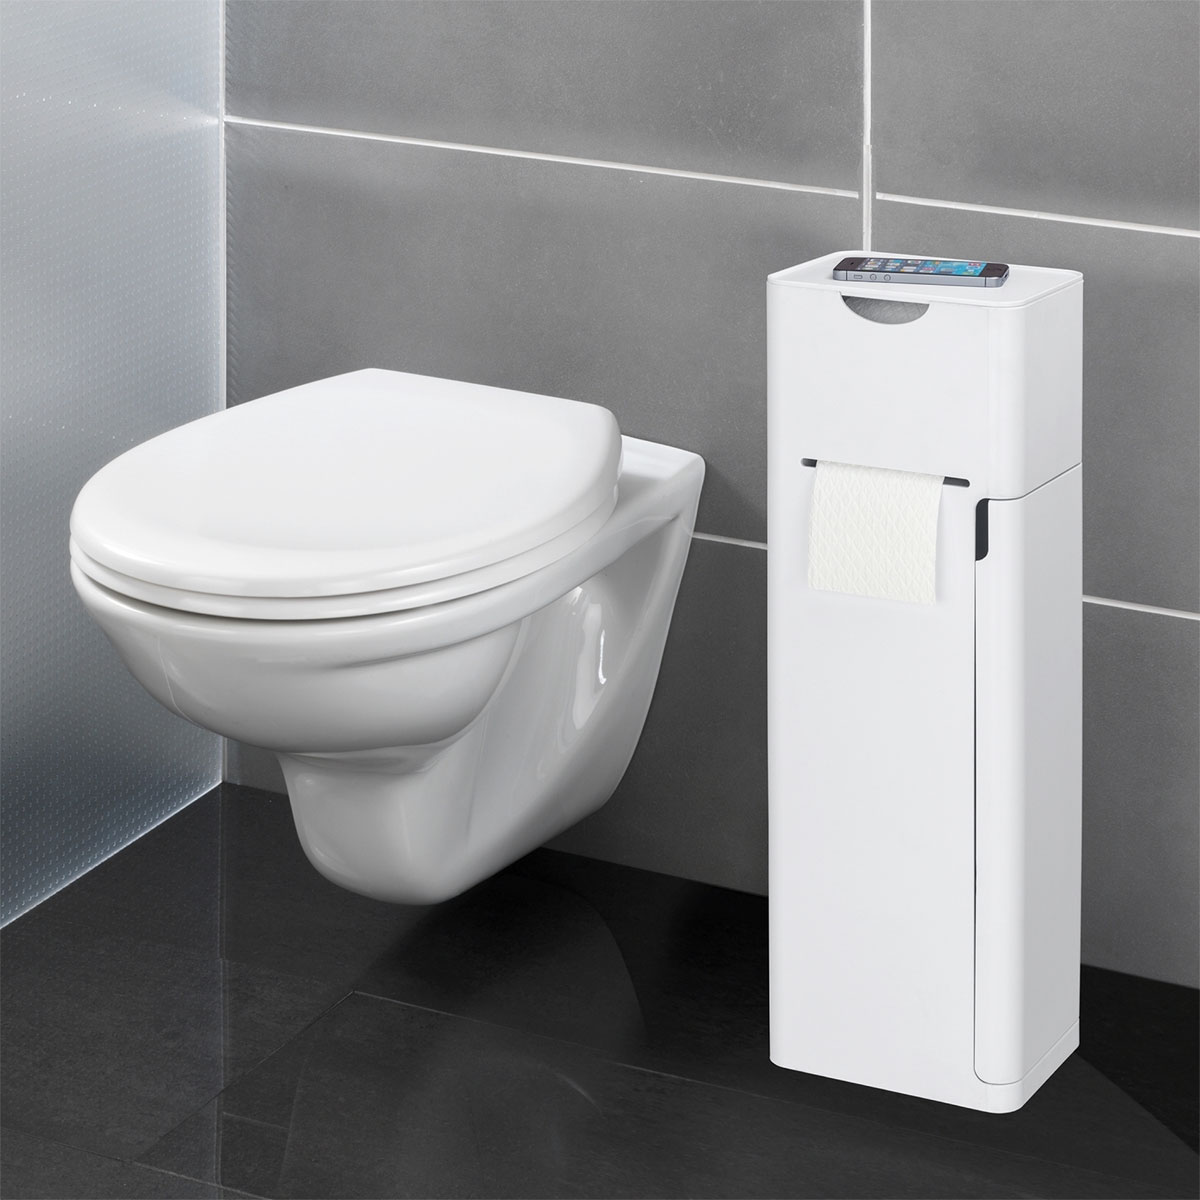 WC-Bürstenhalter integrierter 6 Ersatzrollenhalter Imon Ablage und 1 WC-Garnitur Toilettenpapierhalter Stand in Wenko Weiß matt 514825 Stauraumfächer |